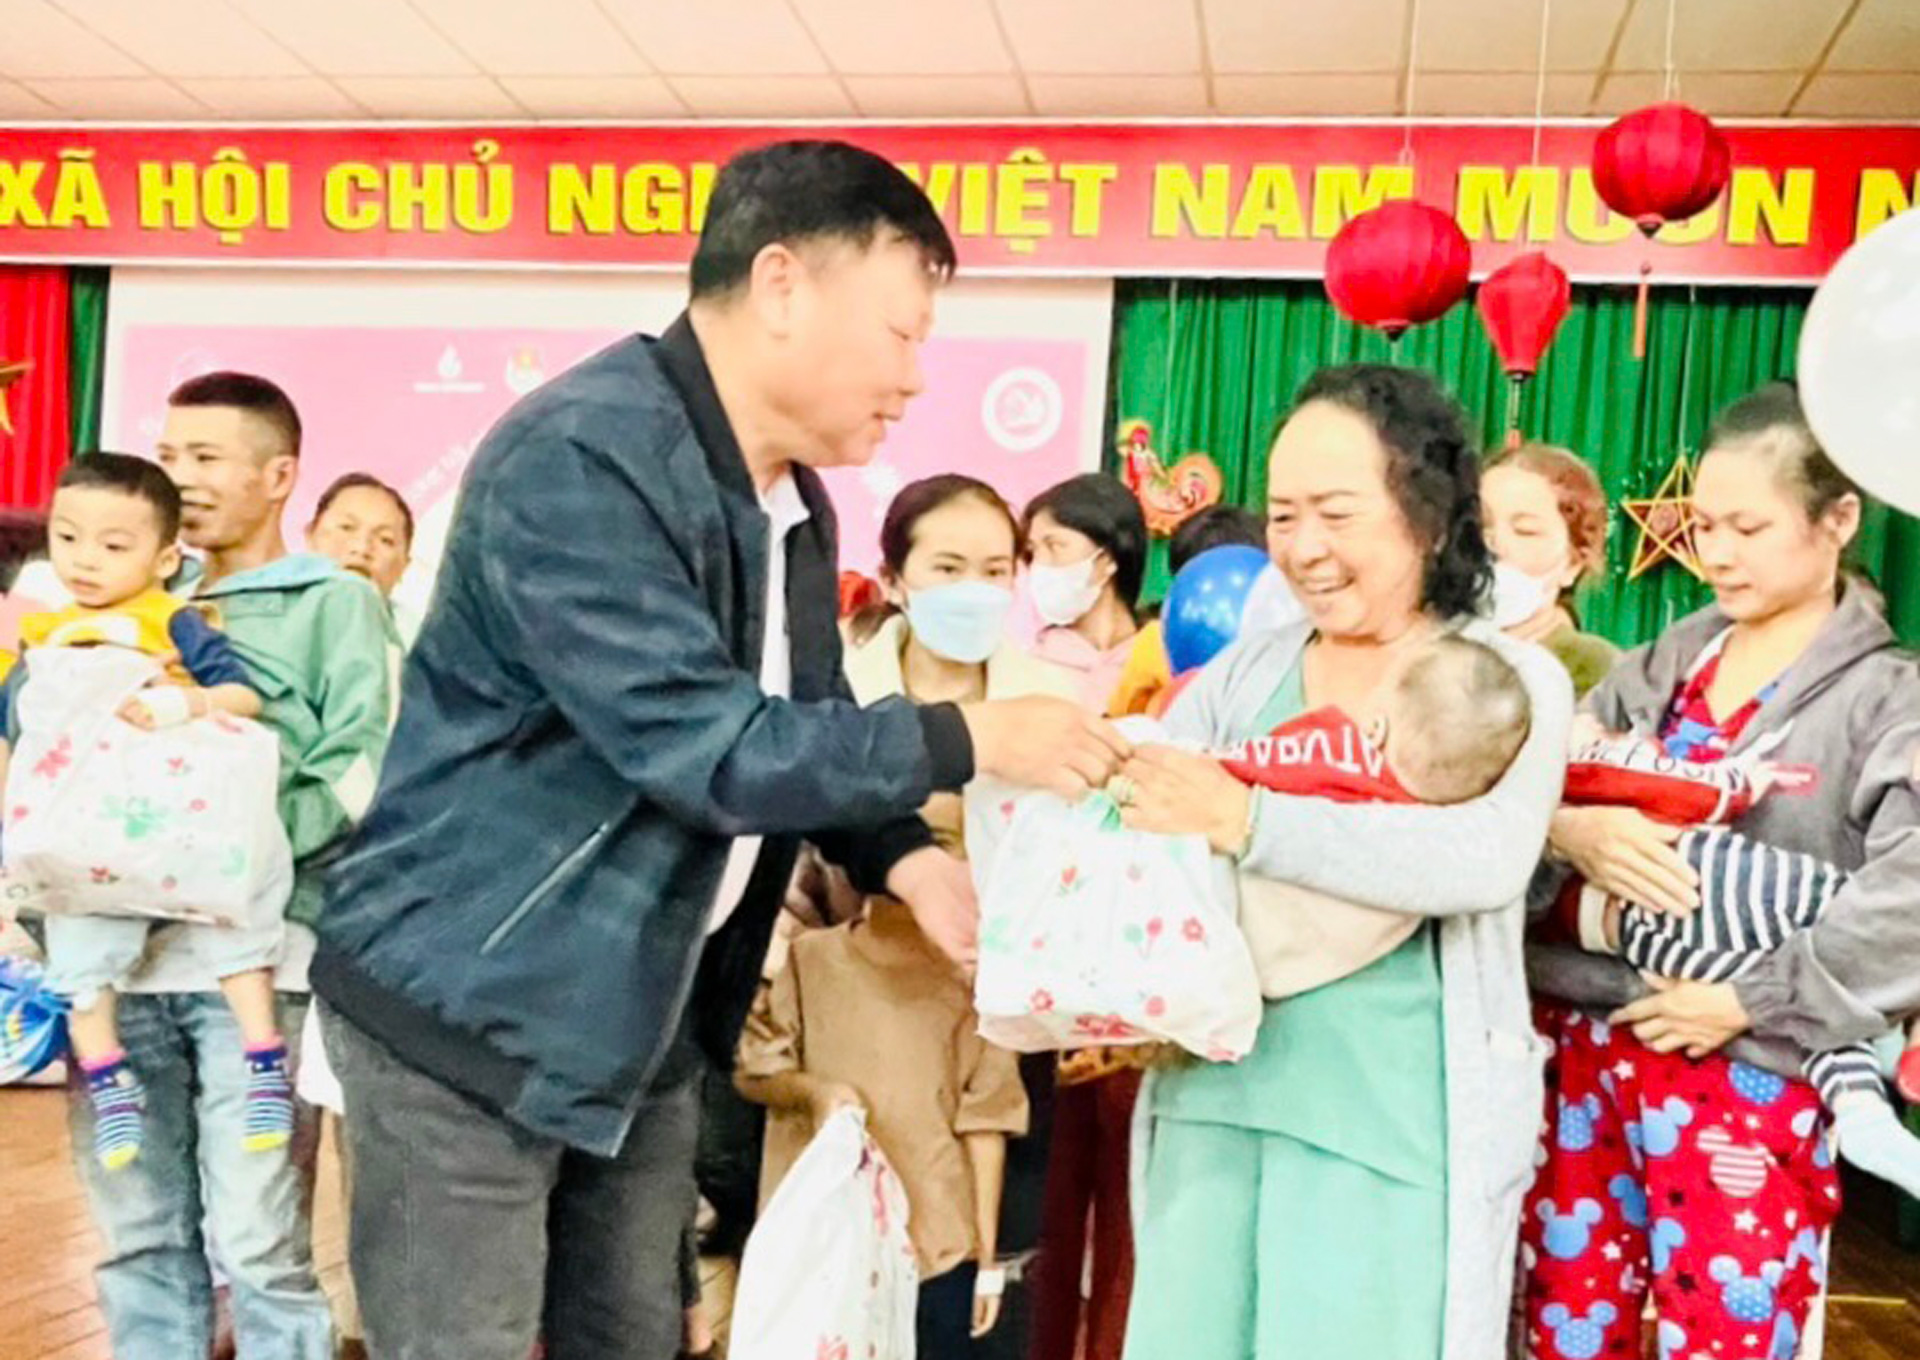 Trao tặng quà Trung thu cho trẻ em đang điều trị tại Bệnh viện Nhi Lâm Đồng